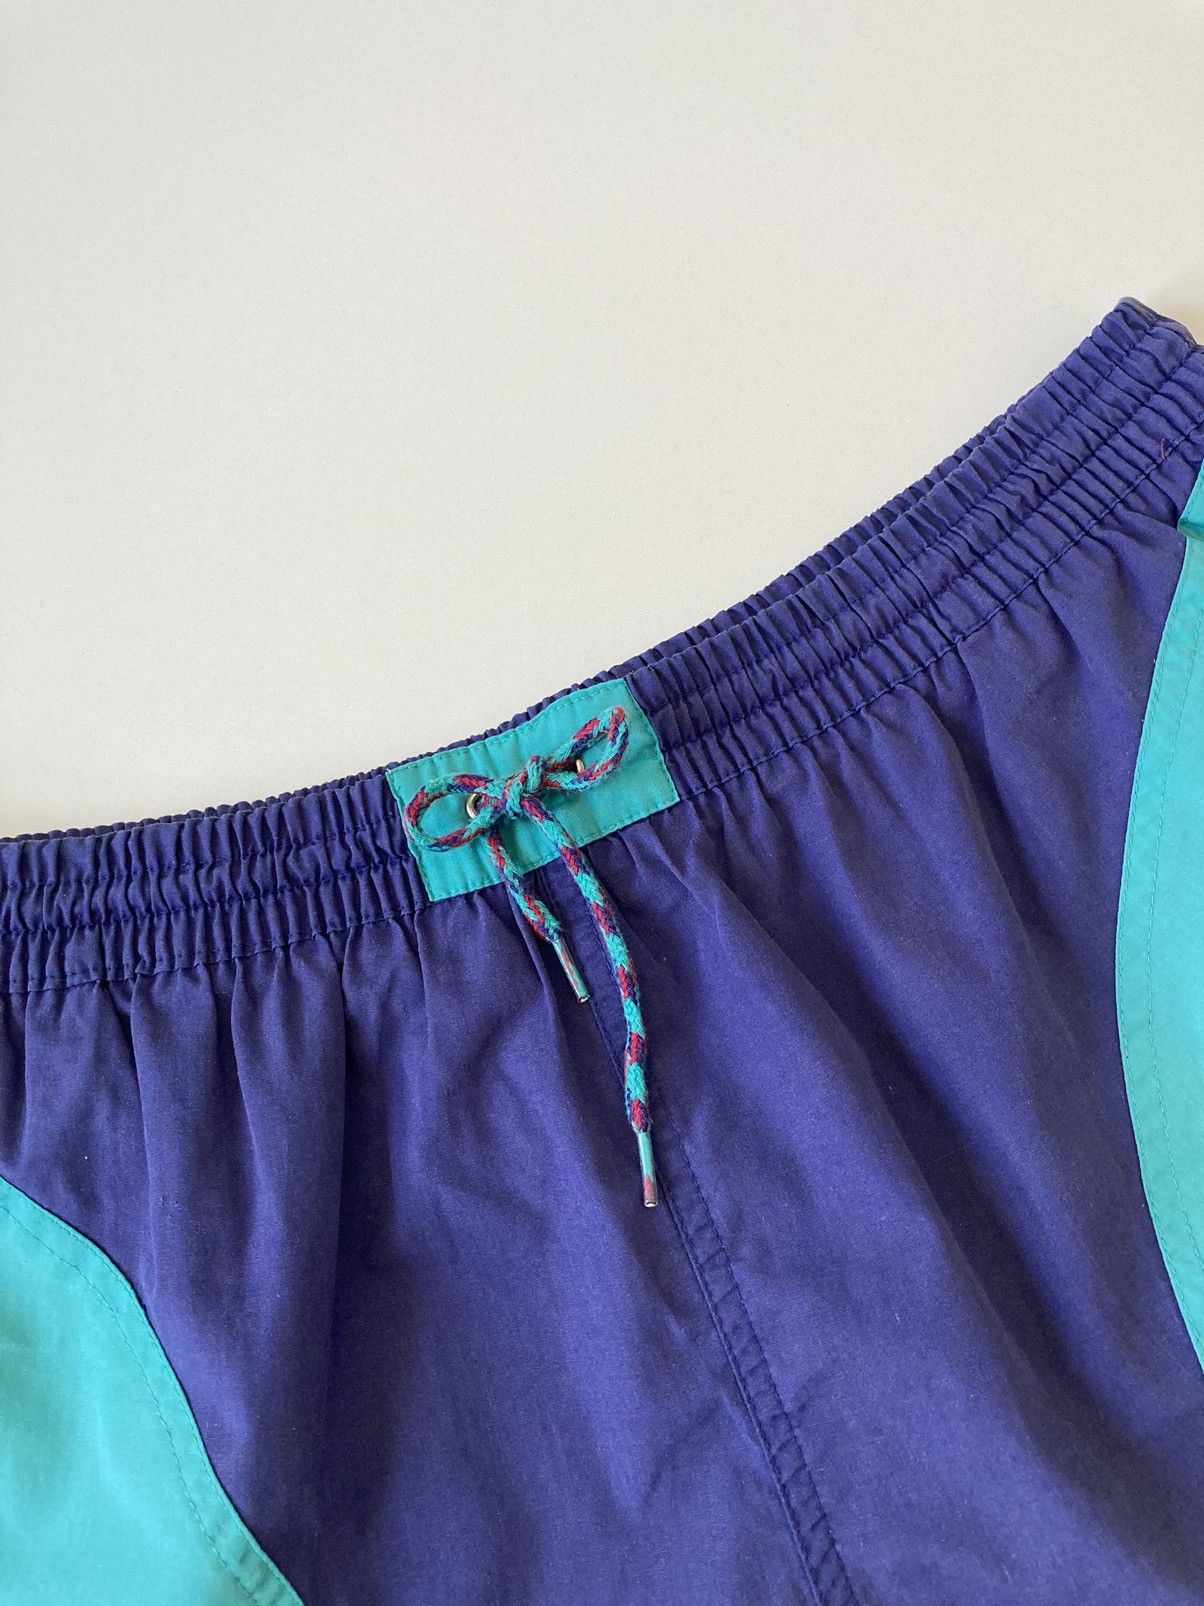 Vintage colorful shorts Speedo Vintage 90’s L Size US 34 / EU 50 - 2 Preview